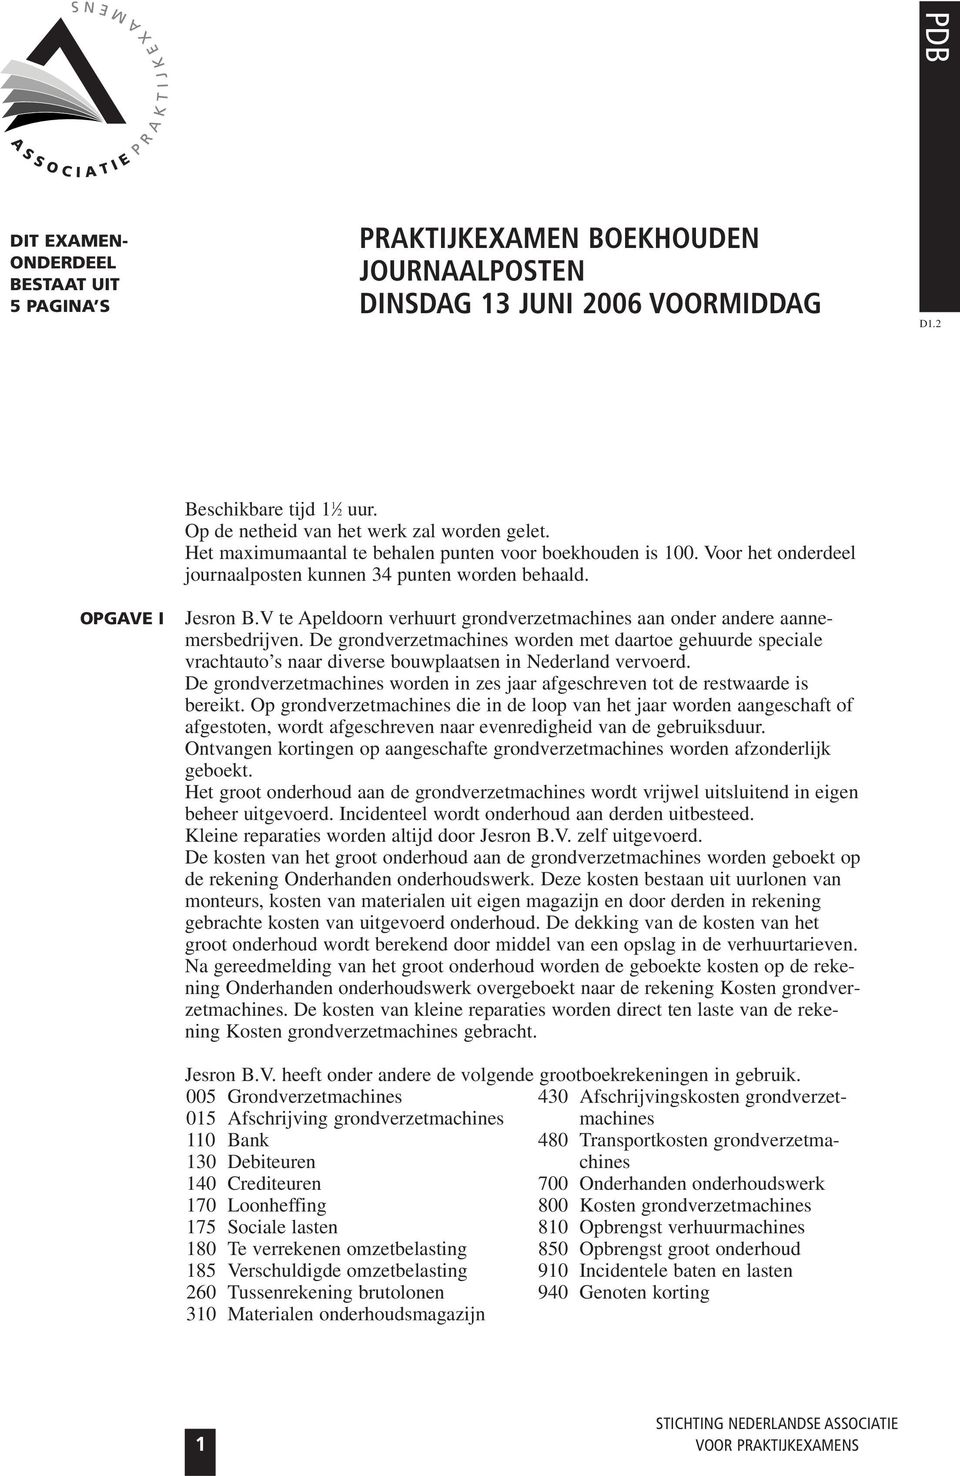 V te Apeldoorn verhuurt grondverzetmachines aan onder andere aannemersbedrijven.